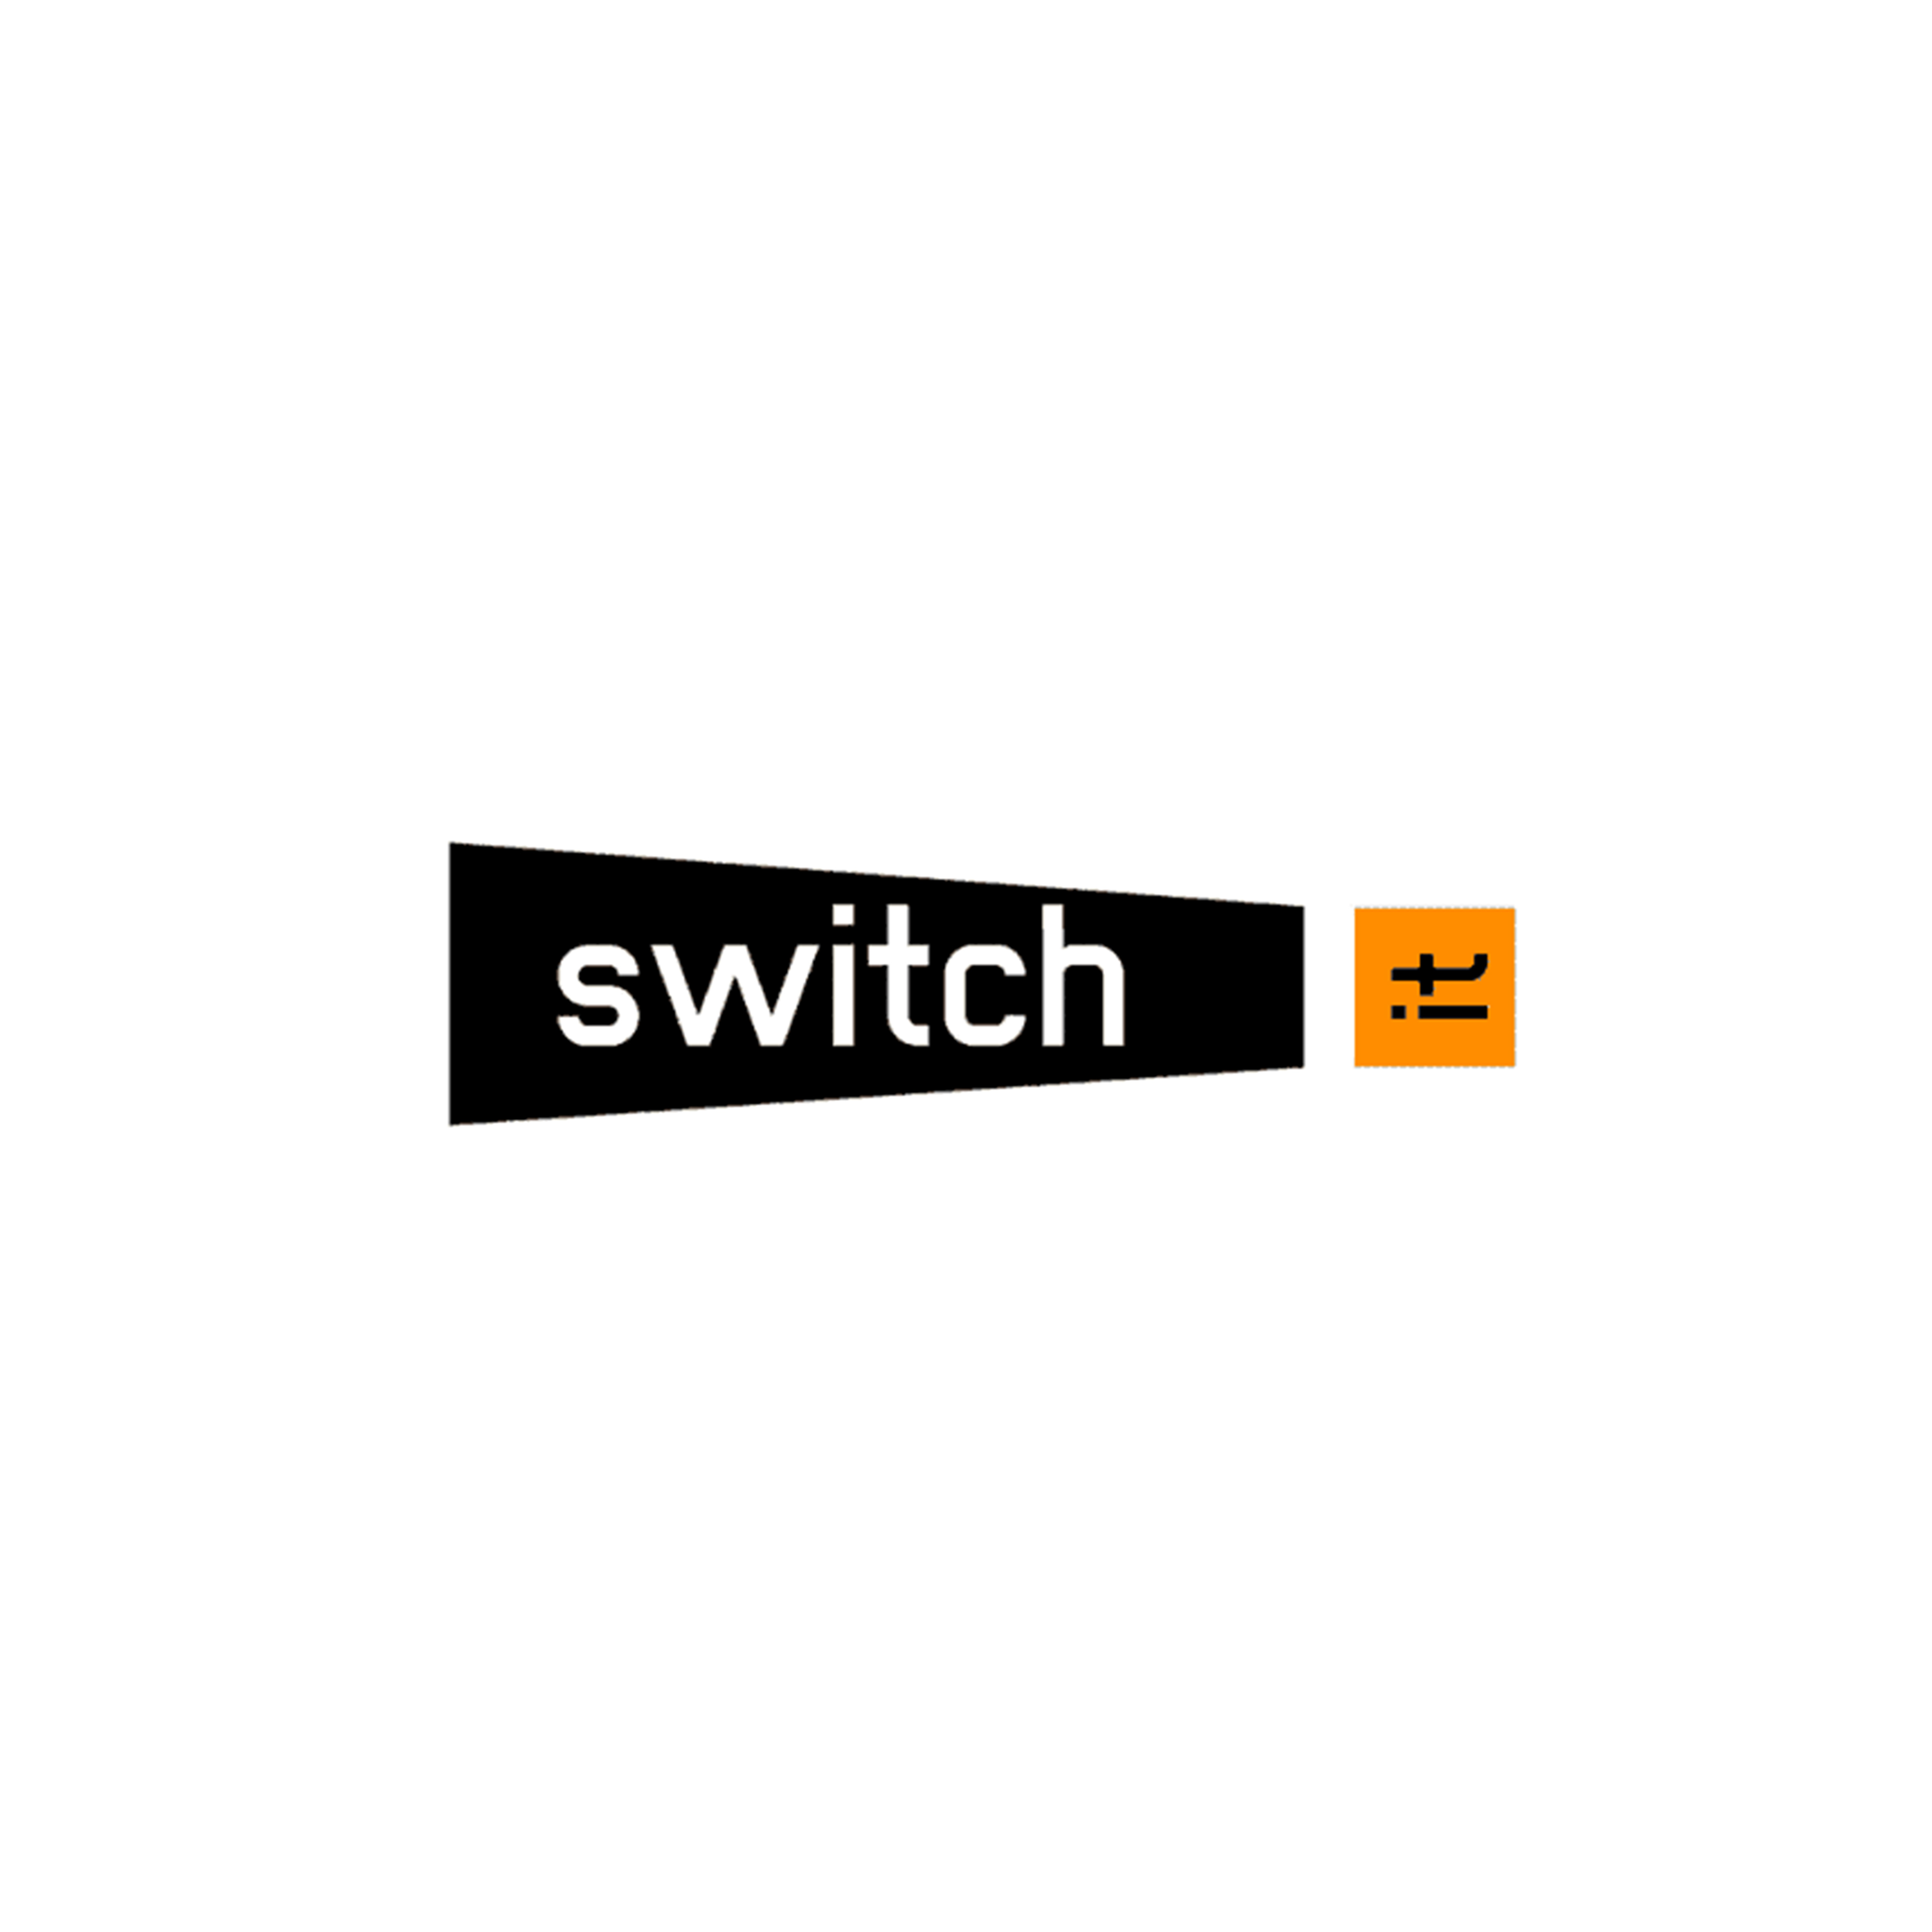 switch it